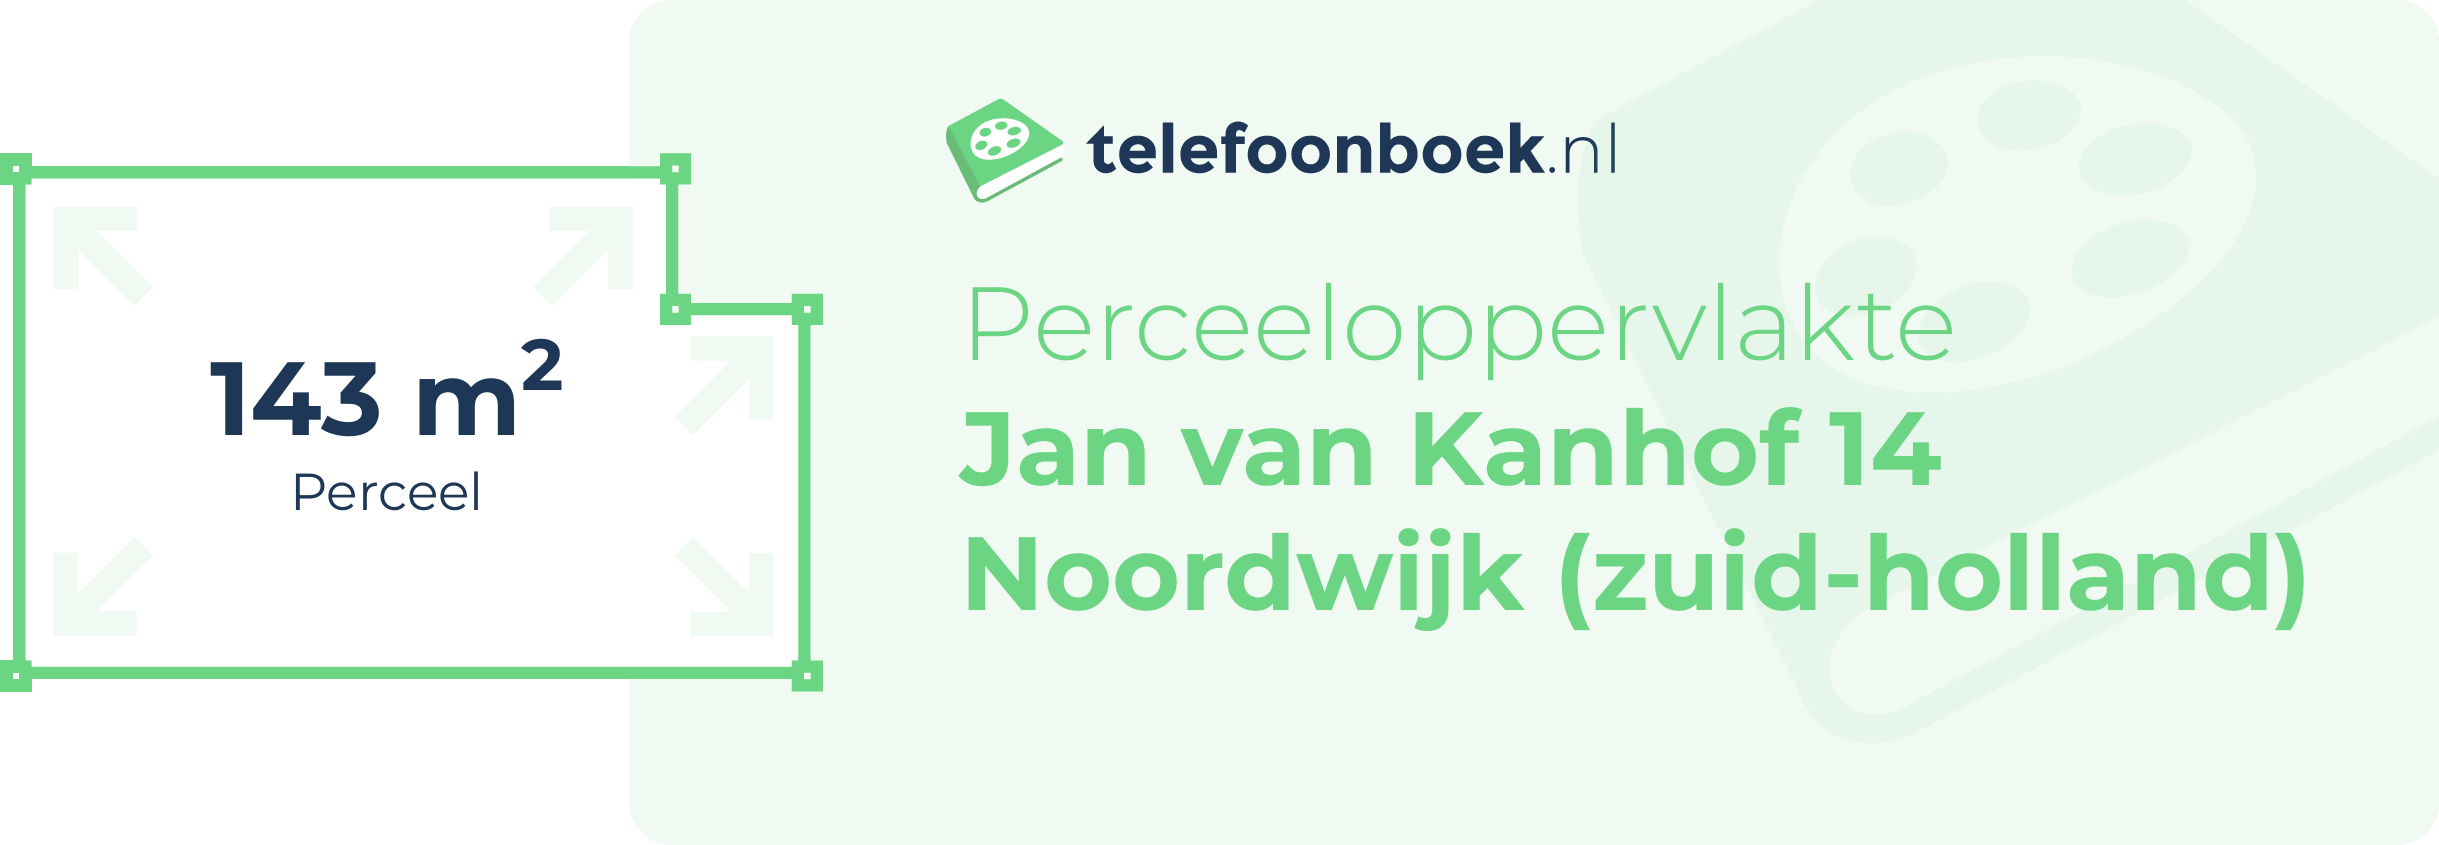 Perceeloppervlakte Jan Van Kanhof 14 Noordwijk (Zuid-Holland)